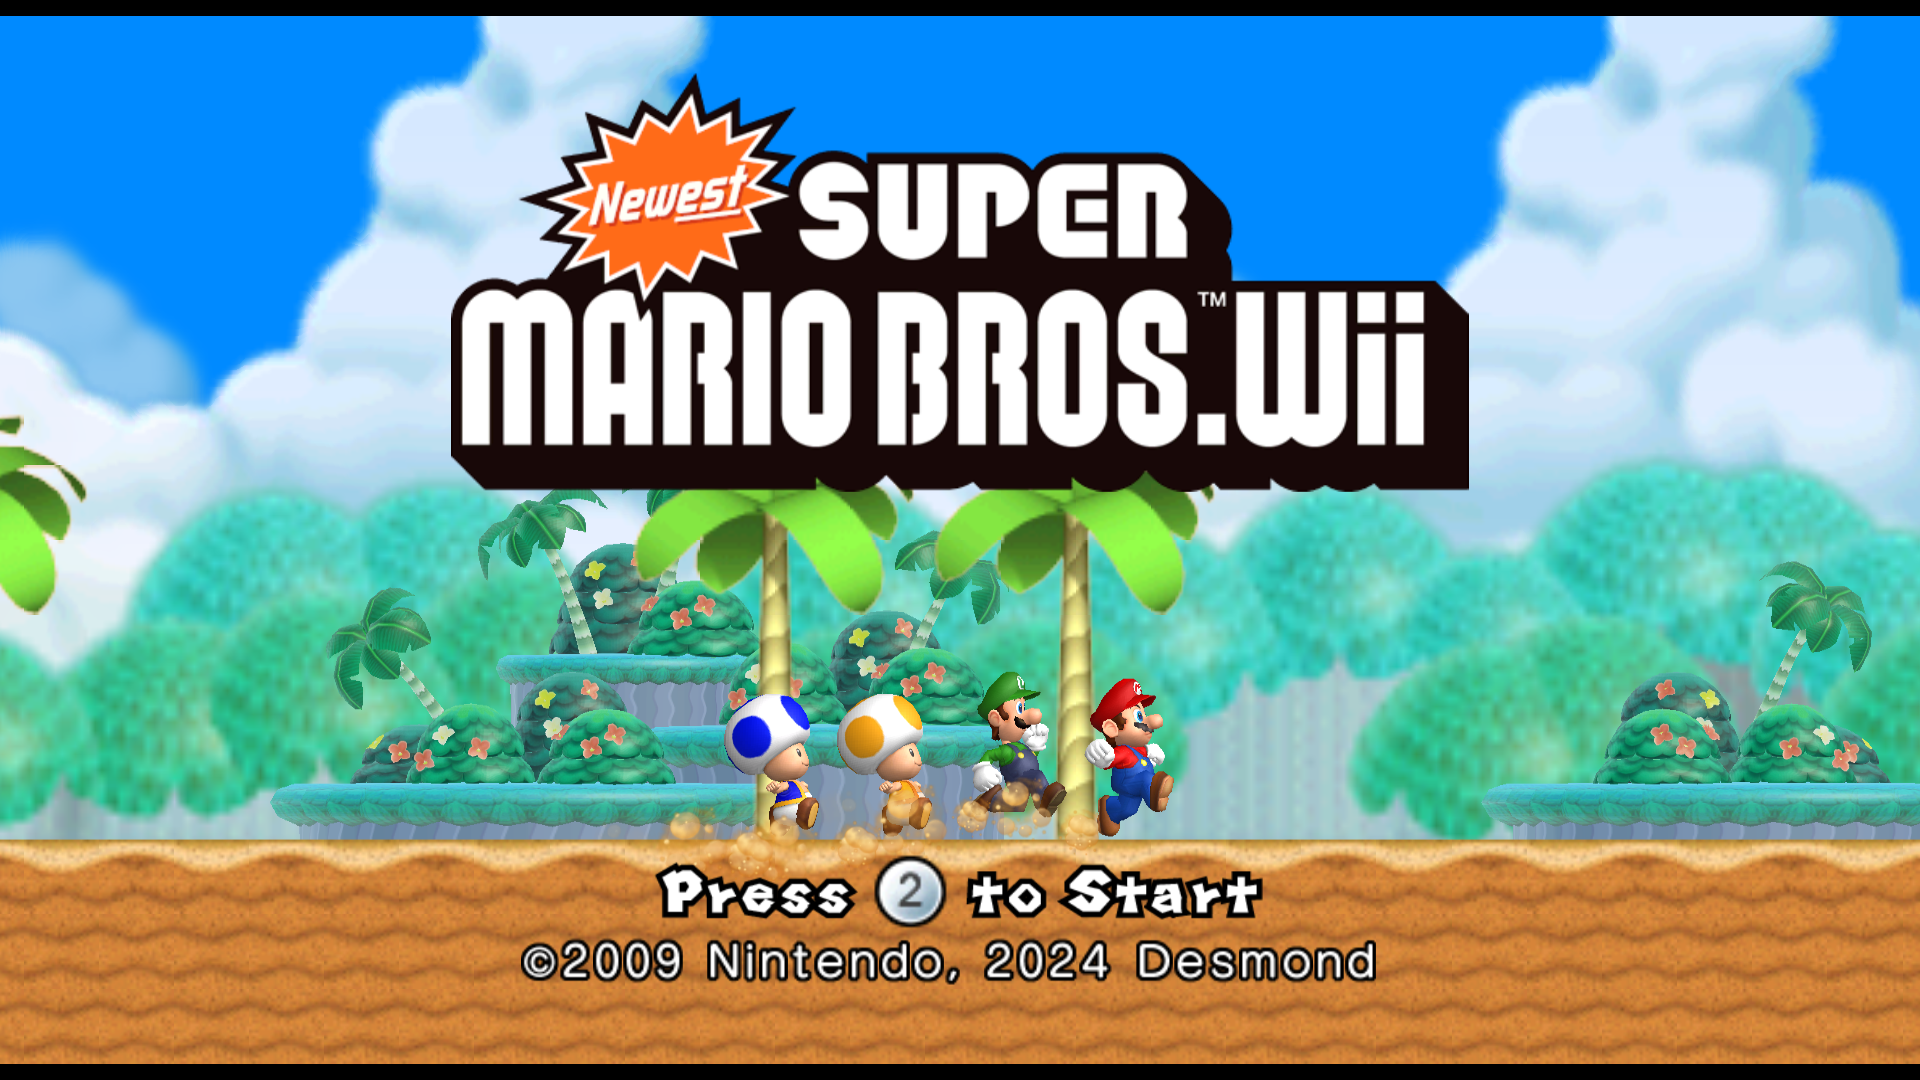 Nintendo Hacks Super Mario Bros. For Limited-Edition Wii